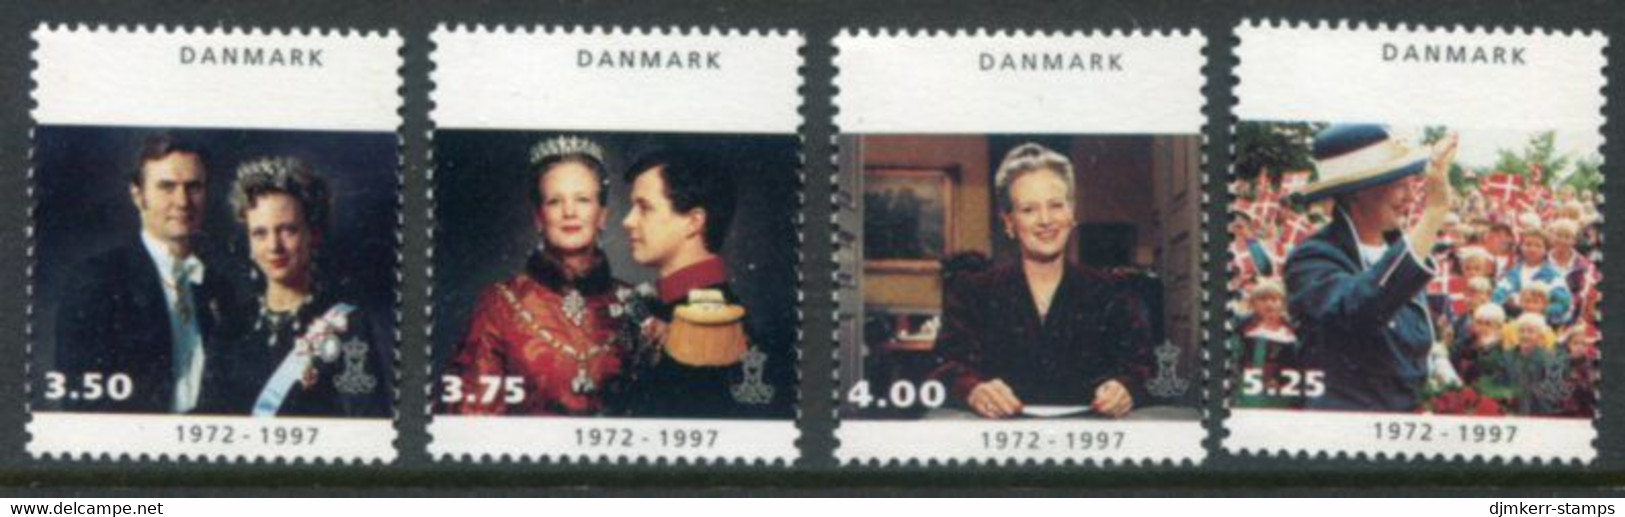 DENMARK 1997 25th Anniversary Of Regency MNH / **.  Michel 1142-45 - Ungebraucht